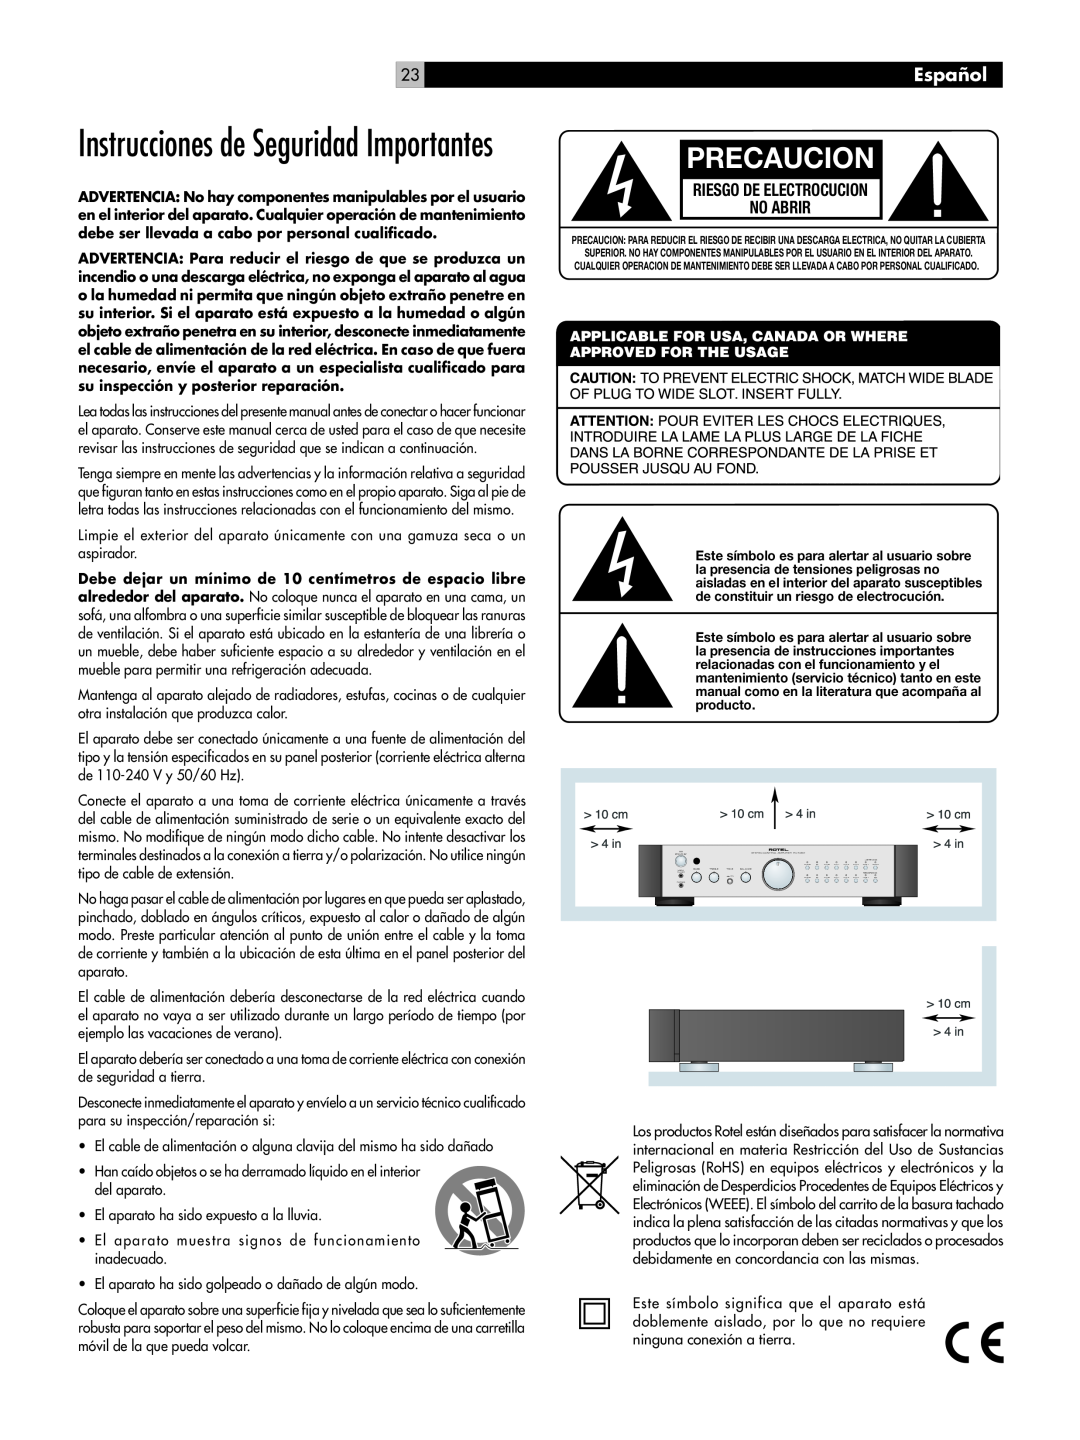 Rotel RC-1082 owner manual Precaucion, Instrucciones de Seguridad Importantes, Español 